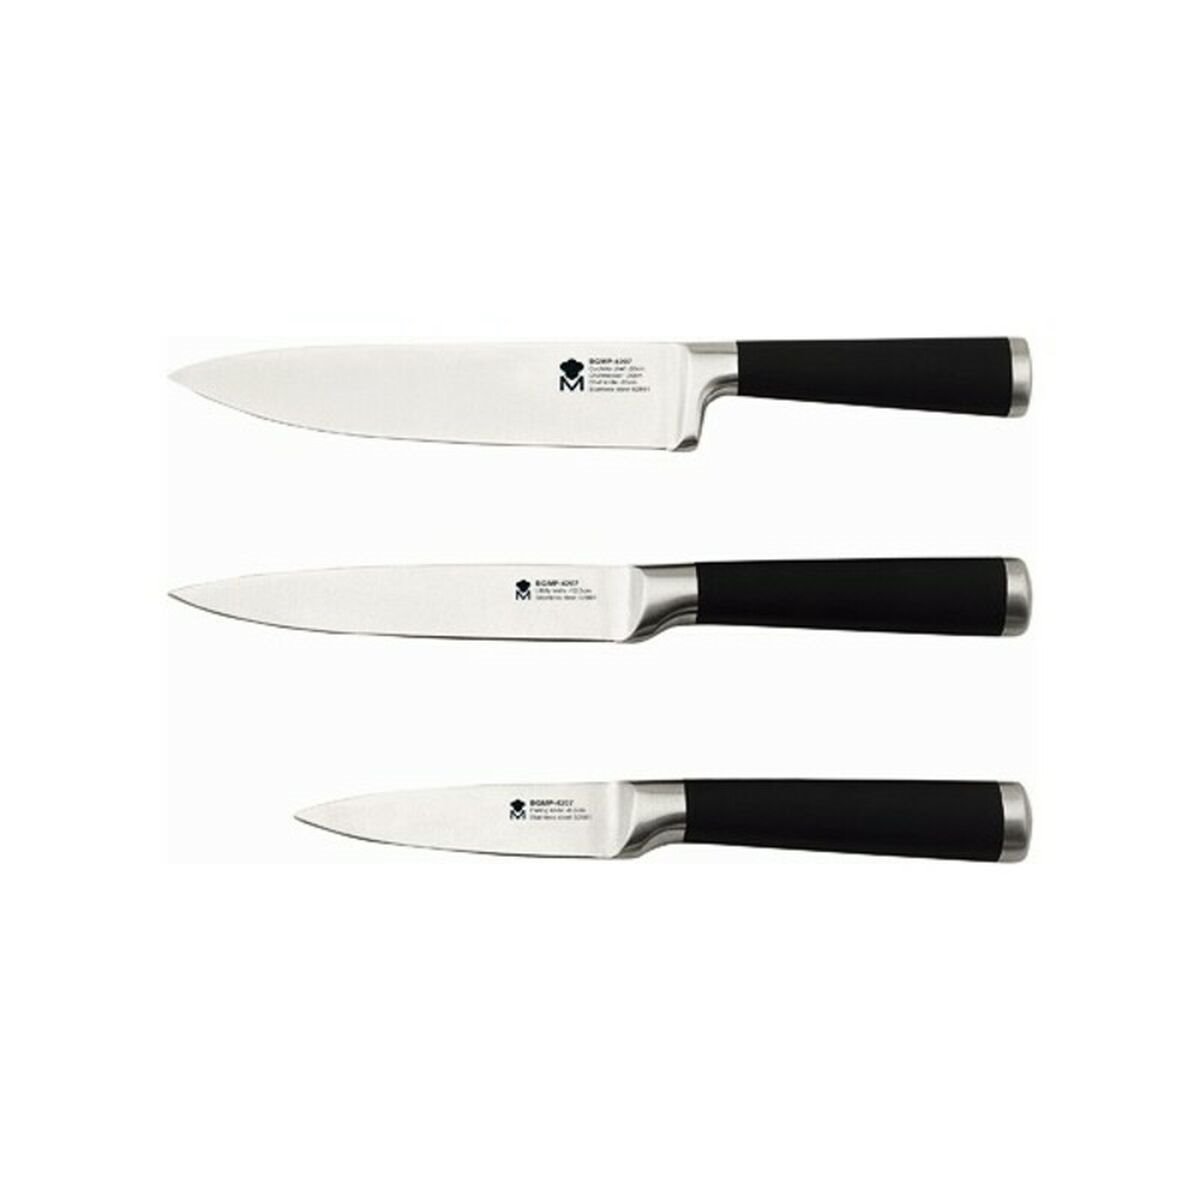 Tacoma de ocho cuchillos Deik por 34,99€ antes 54,99€.